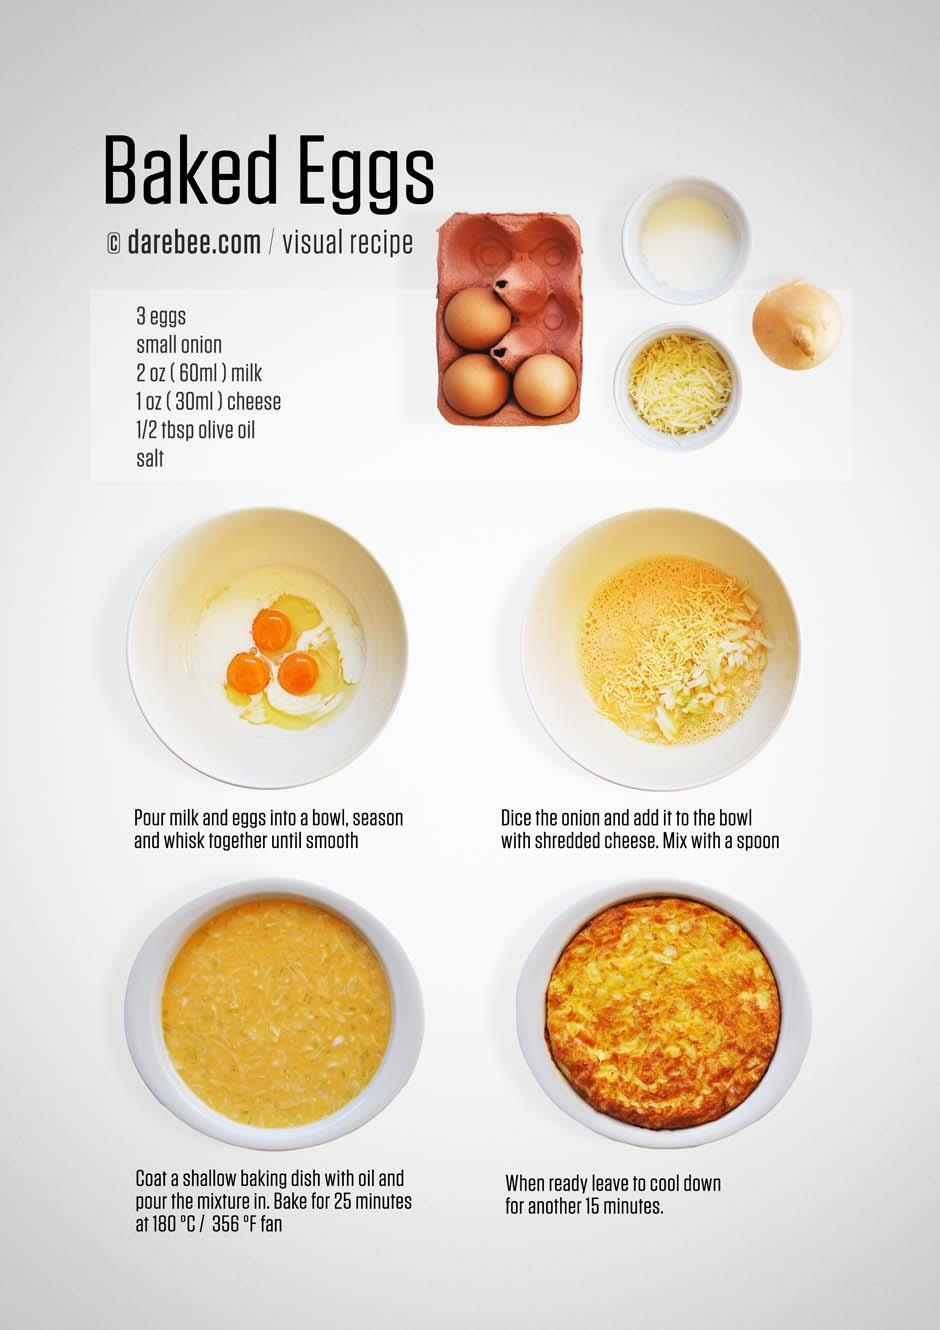 ΦΗΣΑ ΑΤΓΑ 3 μεγάλα αυγά 30g τριμμζνο τυρί light 1 κουταλάκι του γλυκοφ ελαιόλαδο αλάτι / πιπζρι 1 μικρό κρεμμφδι 60 μλ γάλα light Ρίξτε το γάλα, τα αυγά και το αλατοπίπερο ςε ζνα μπολ, και χτυπιςτε